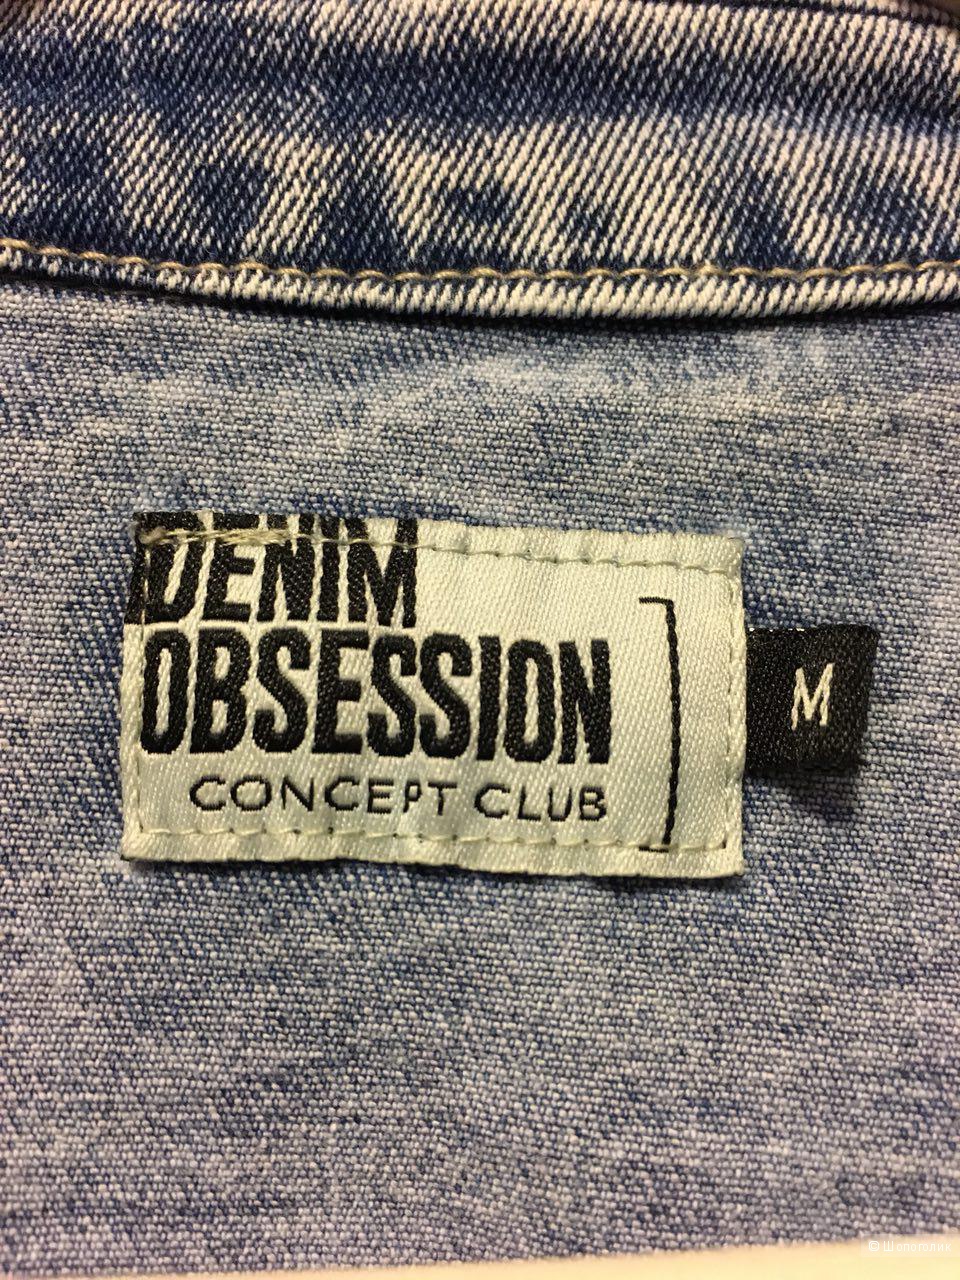 Куртка джинсовая Concept Club, размер М